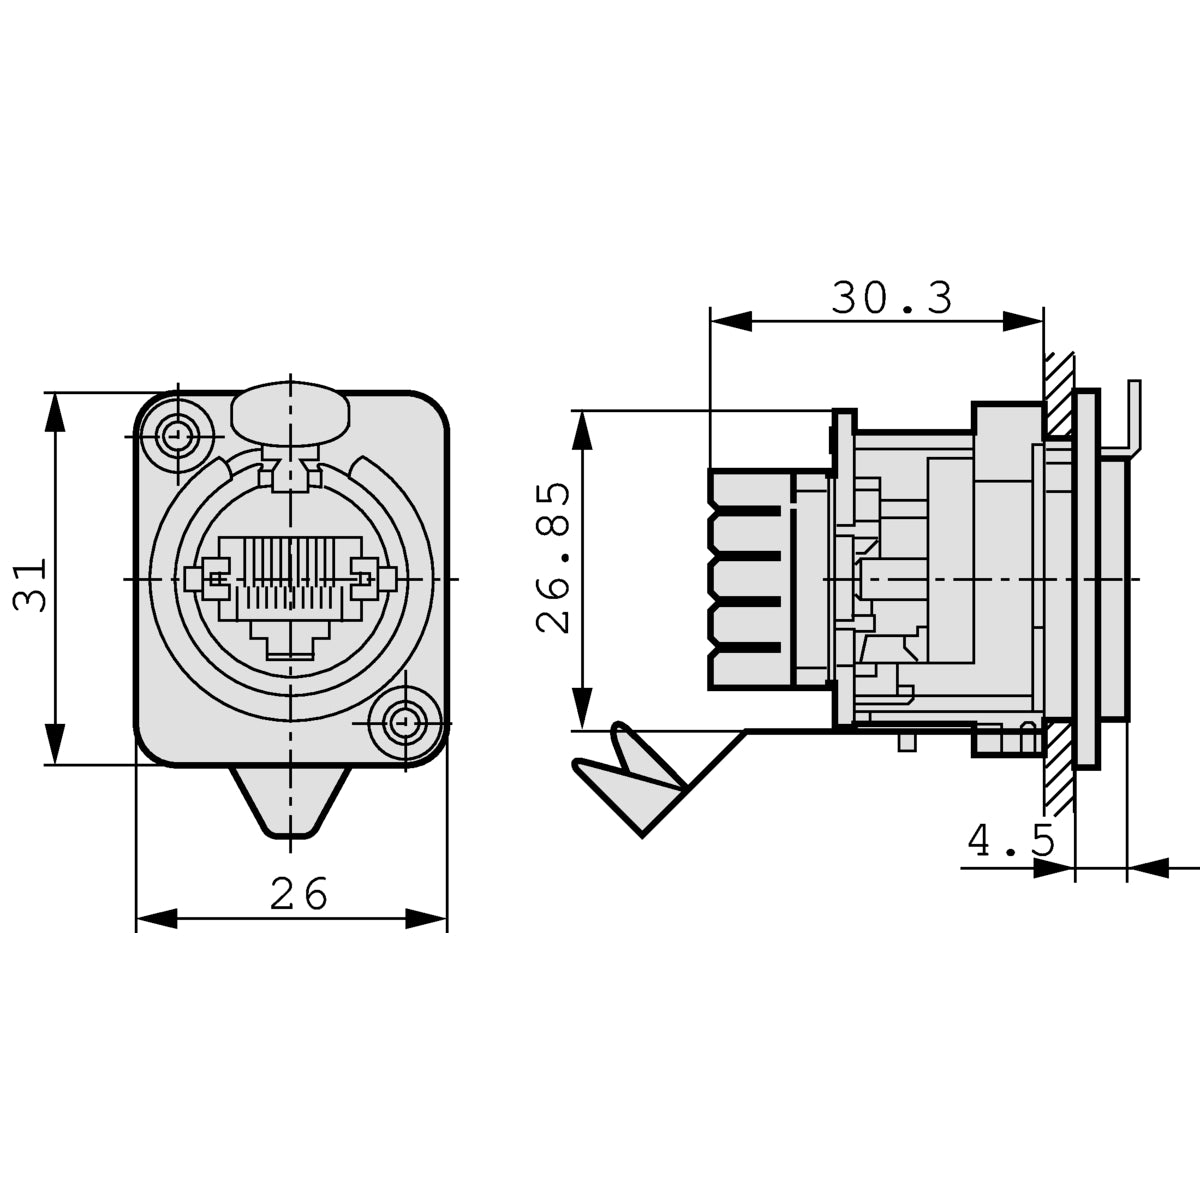 Einbausteckdose mit IDC-Schneidklemmen, D-Size-Metallflansch mit Rastverriegelung, max. Plattenstärke 4 mm, inklusive Befestigungsschrauben